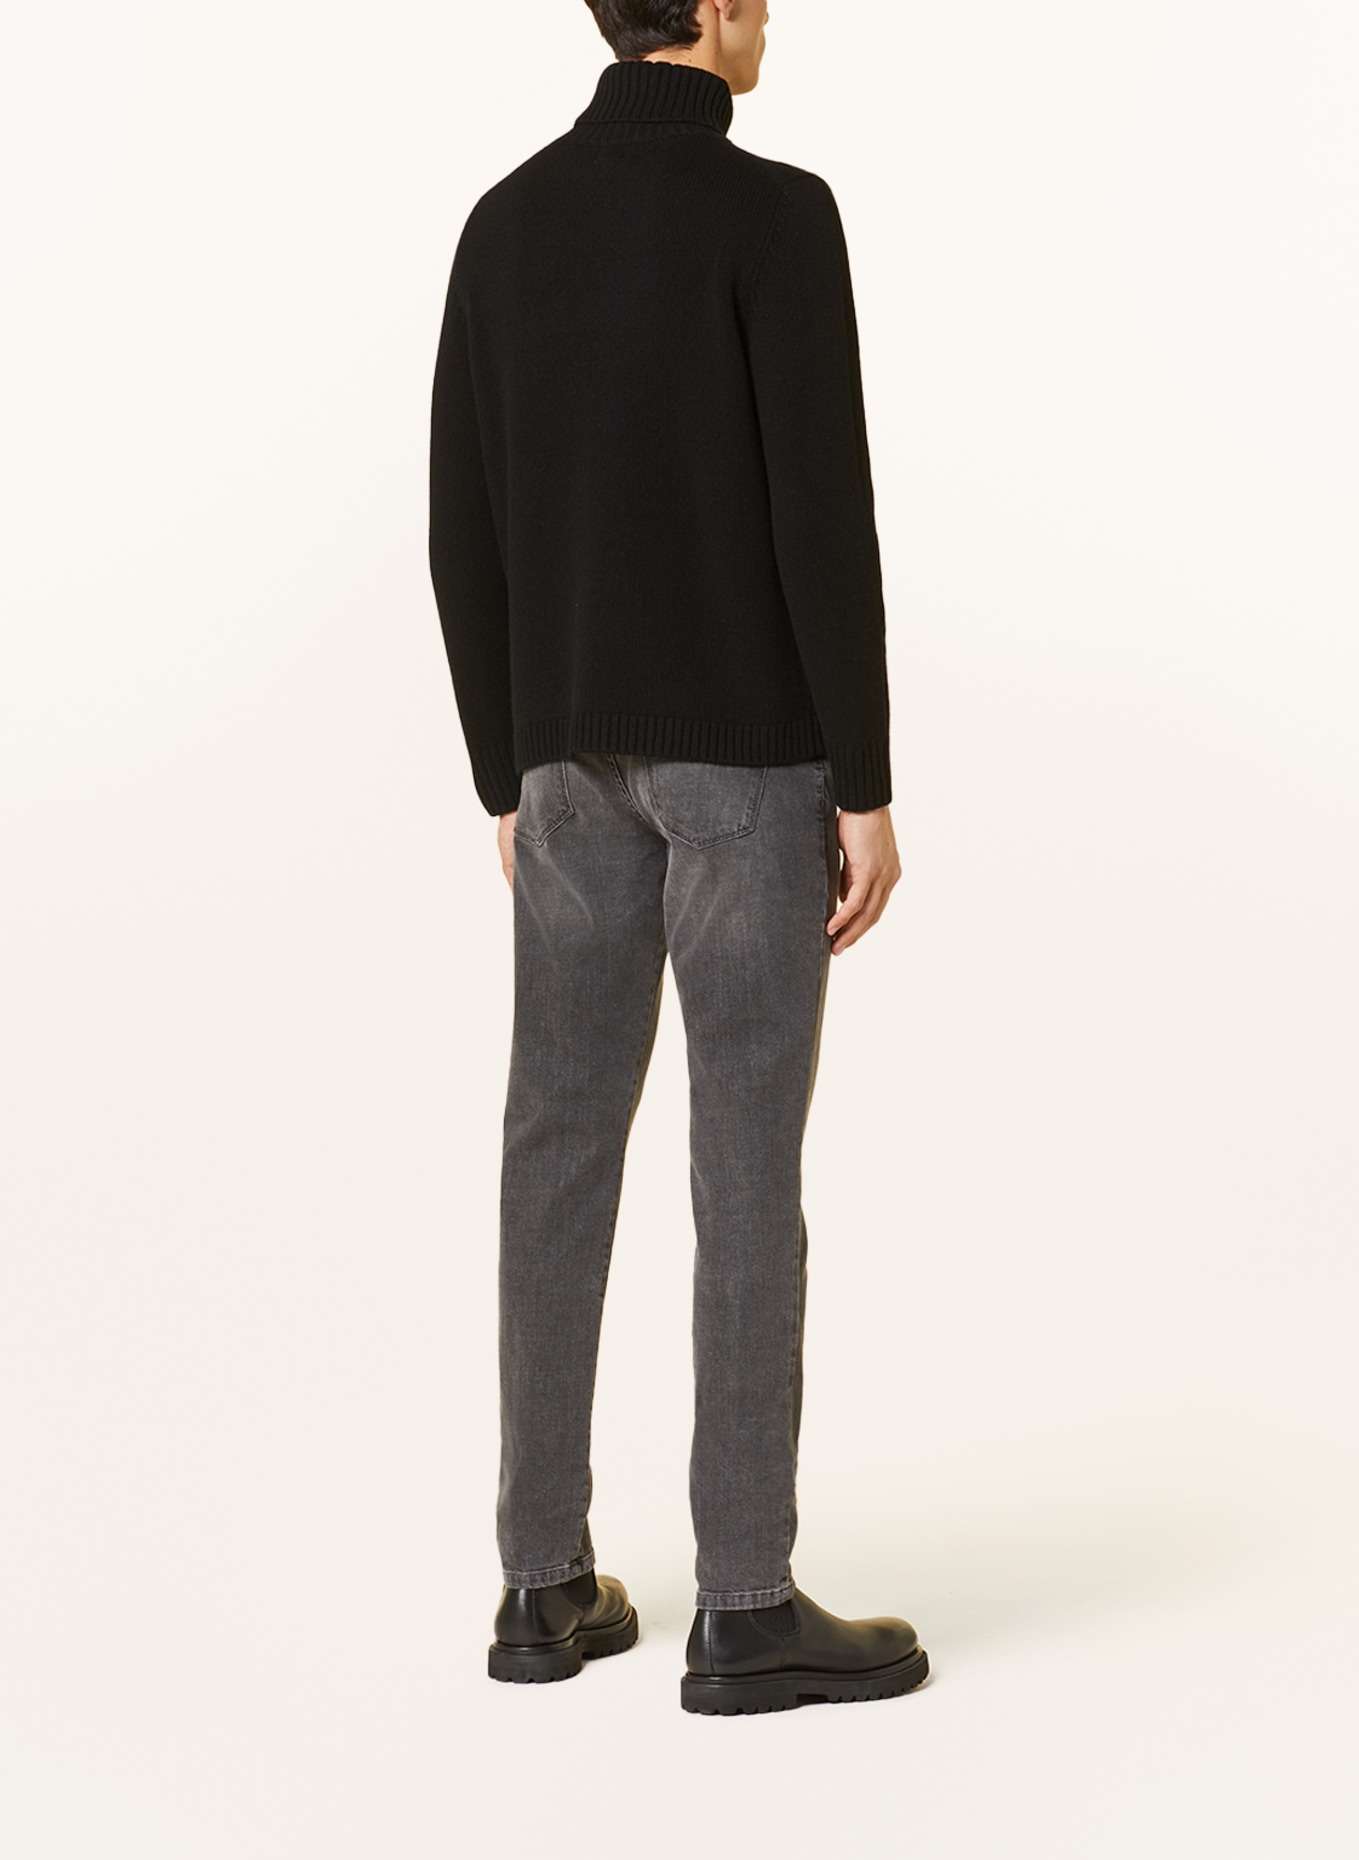 PAUL Turtleneck sweater, Color: BLACK (Image 3)